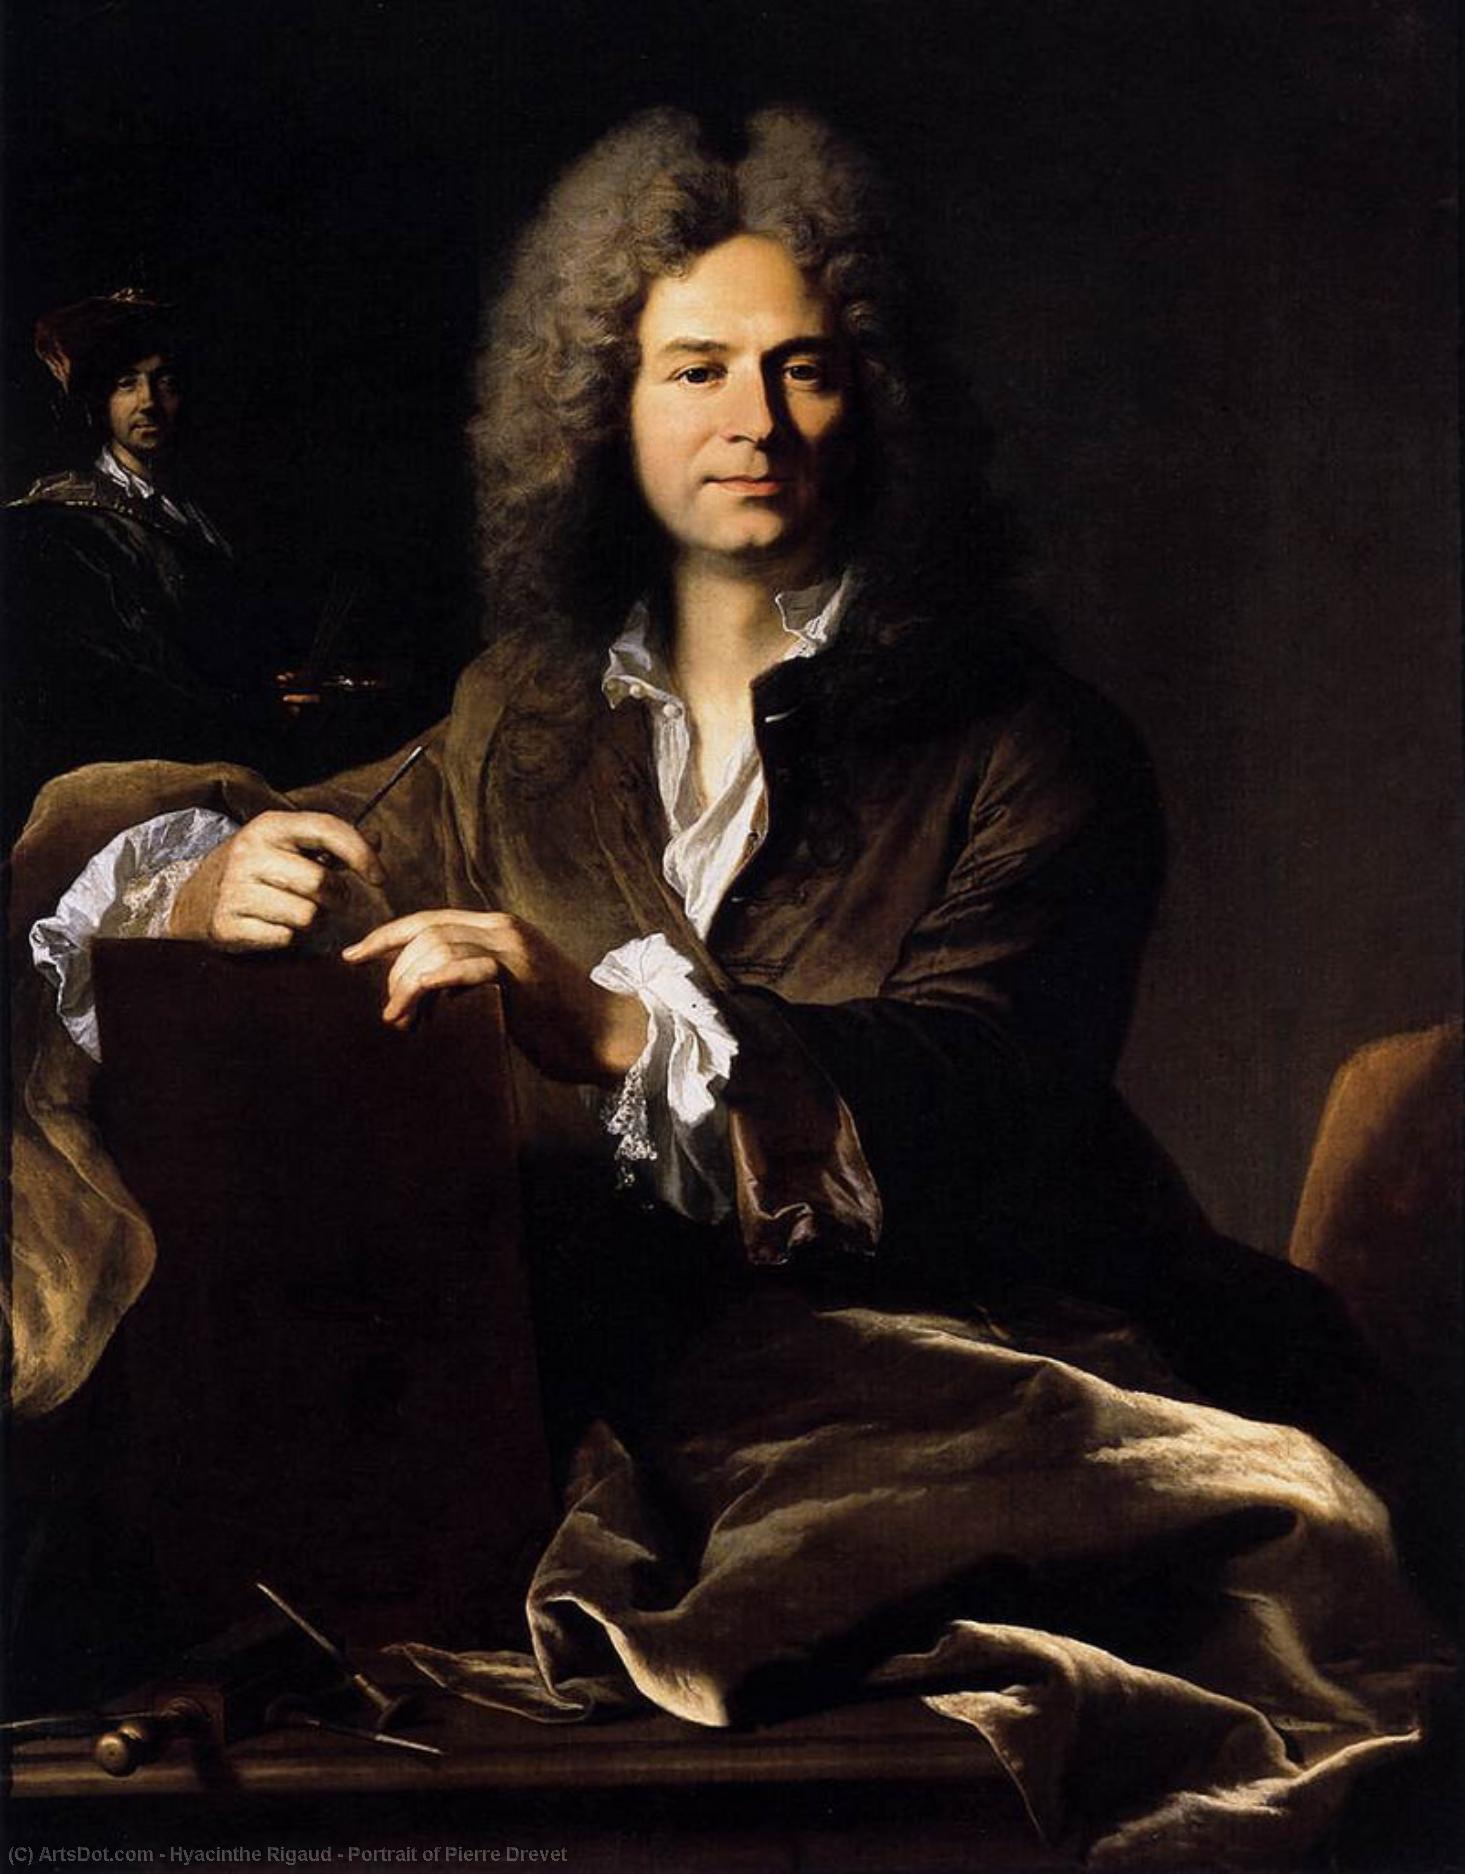 WikiOO.org - Encyclopedia of Fine Arts - Lukisan, Artwork Hyacinthe Rigaud - Portrait of Pierre Drevet